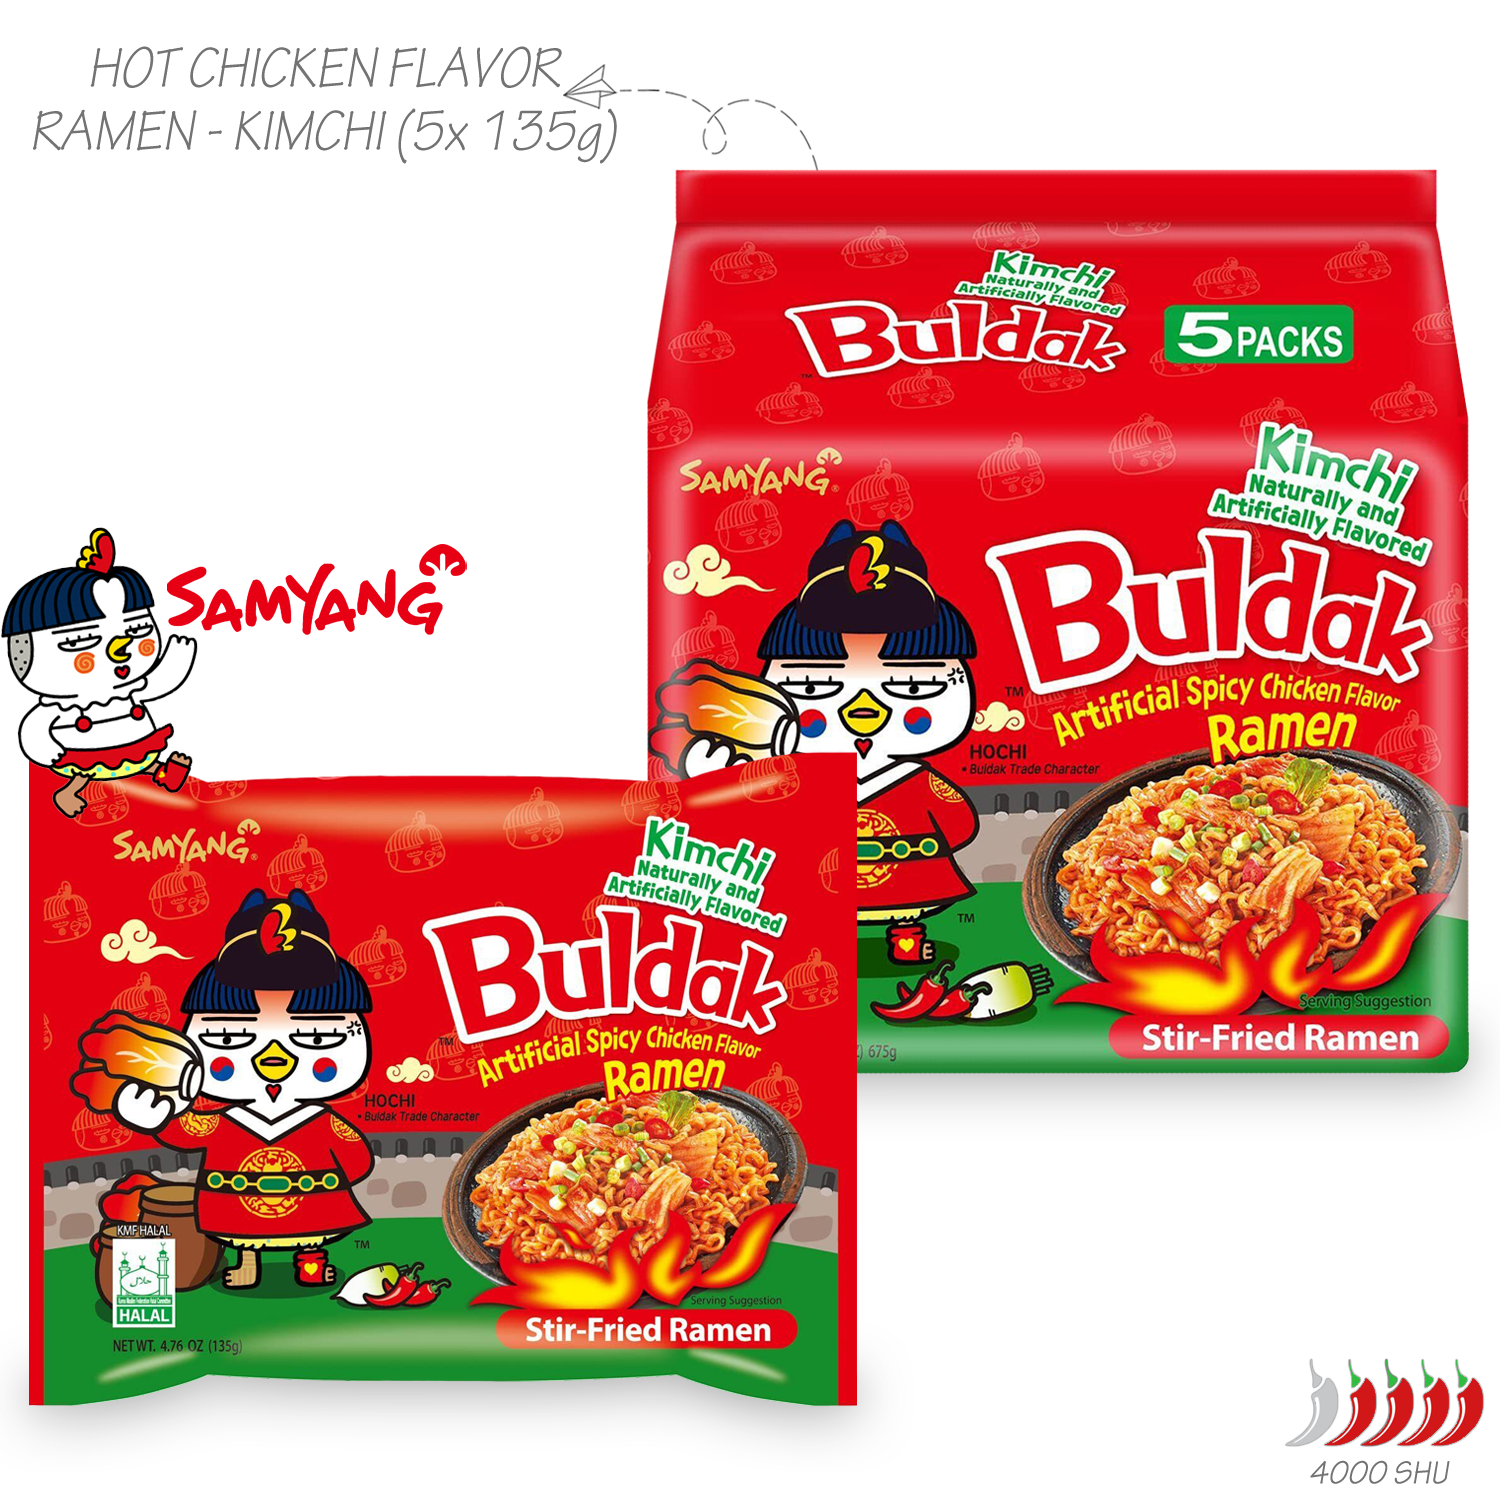 Guksu Buldak Kimchi: Set mit 5 Samyang Buldak Instant-Nudeln